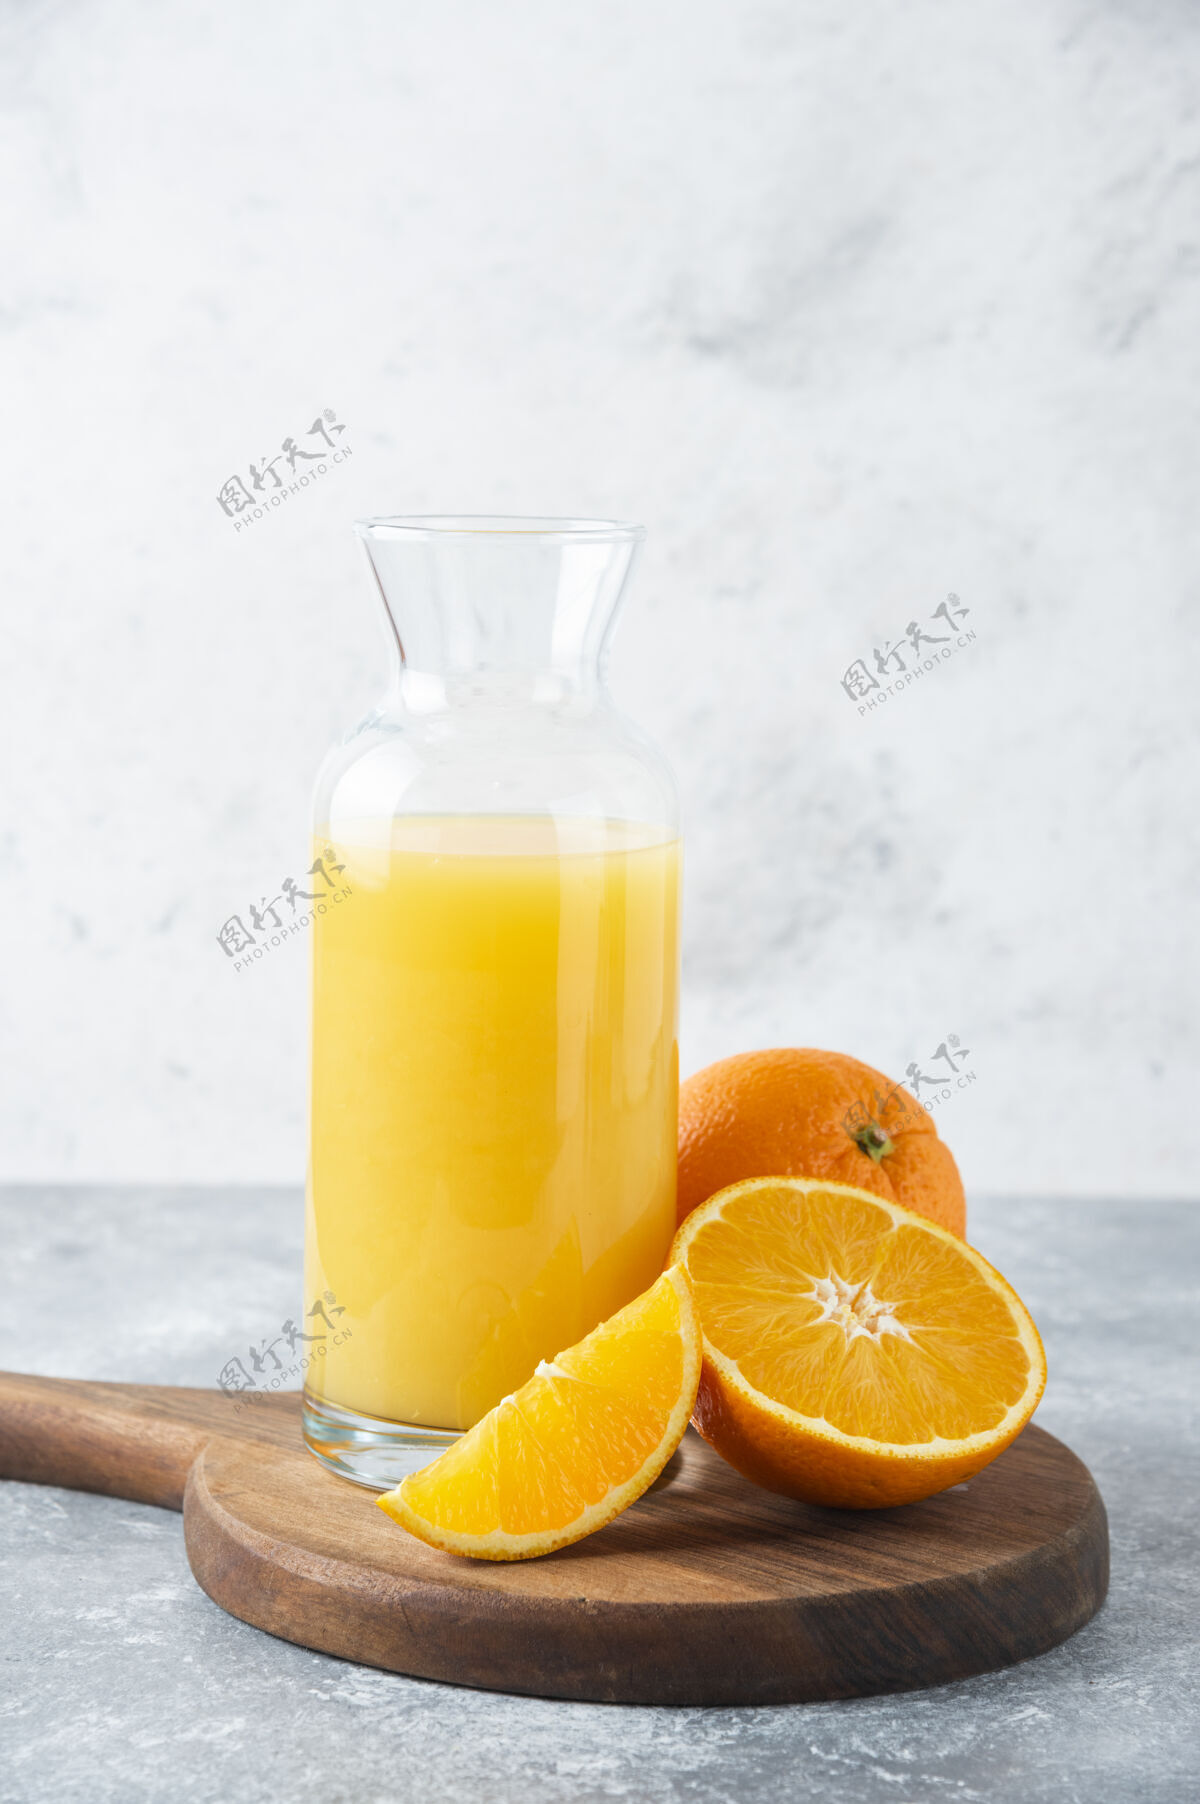 圆形一杯果汁和一片橙子刷新冷味道